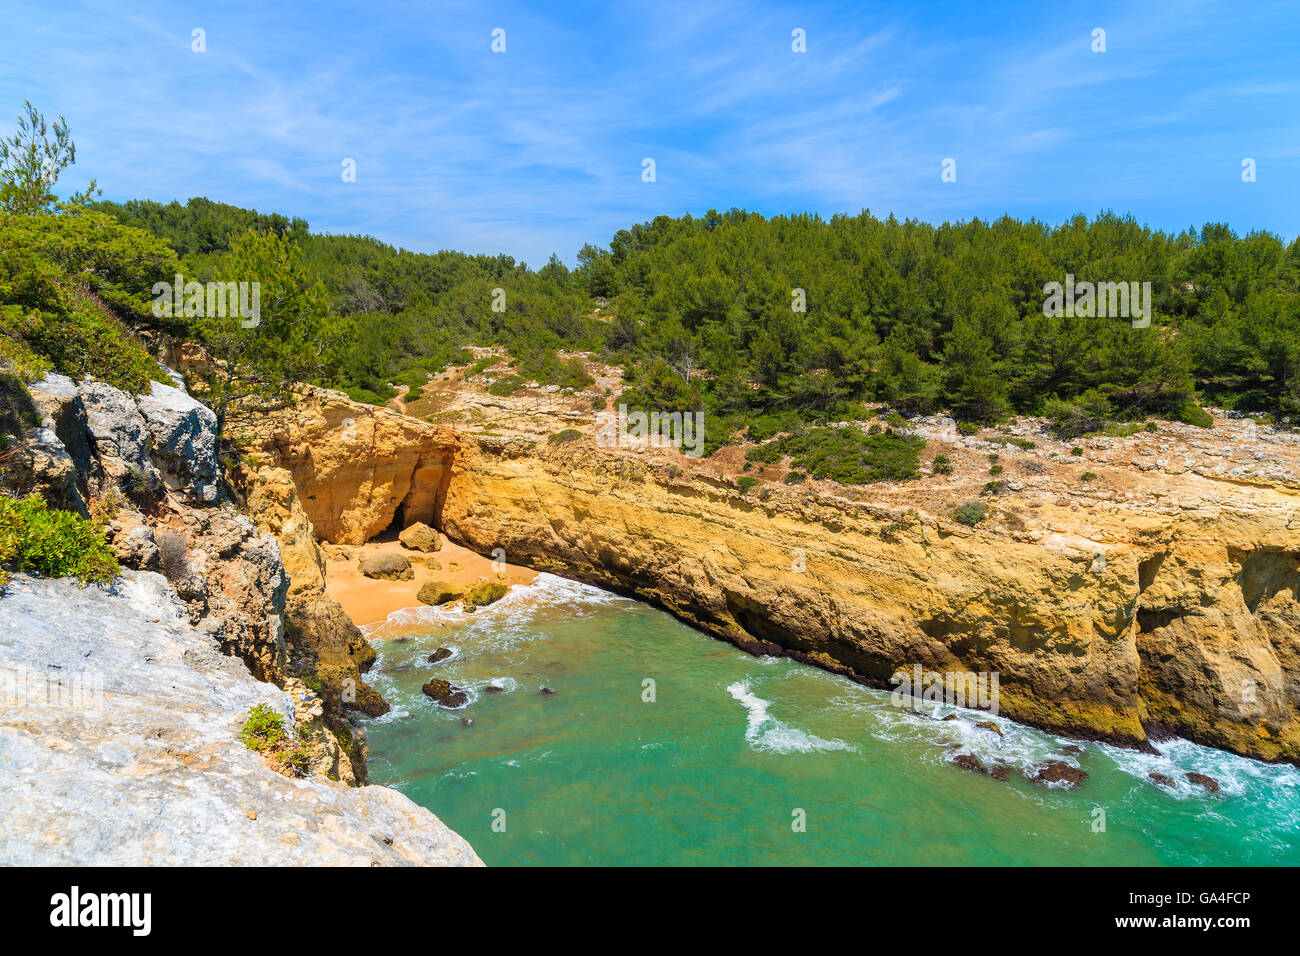 Appartata spiaggia nella baia con pareti rocciose a strapiombo sulla costa della regione di Algarve, PORTOGALLO Foto Stock